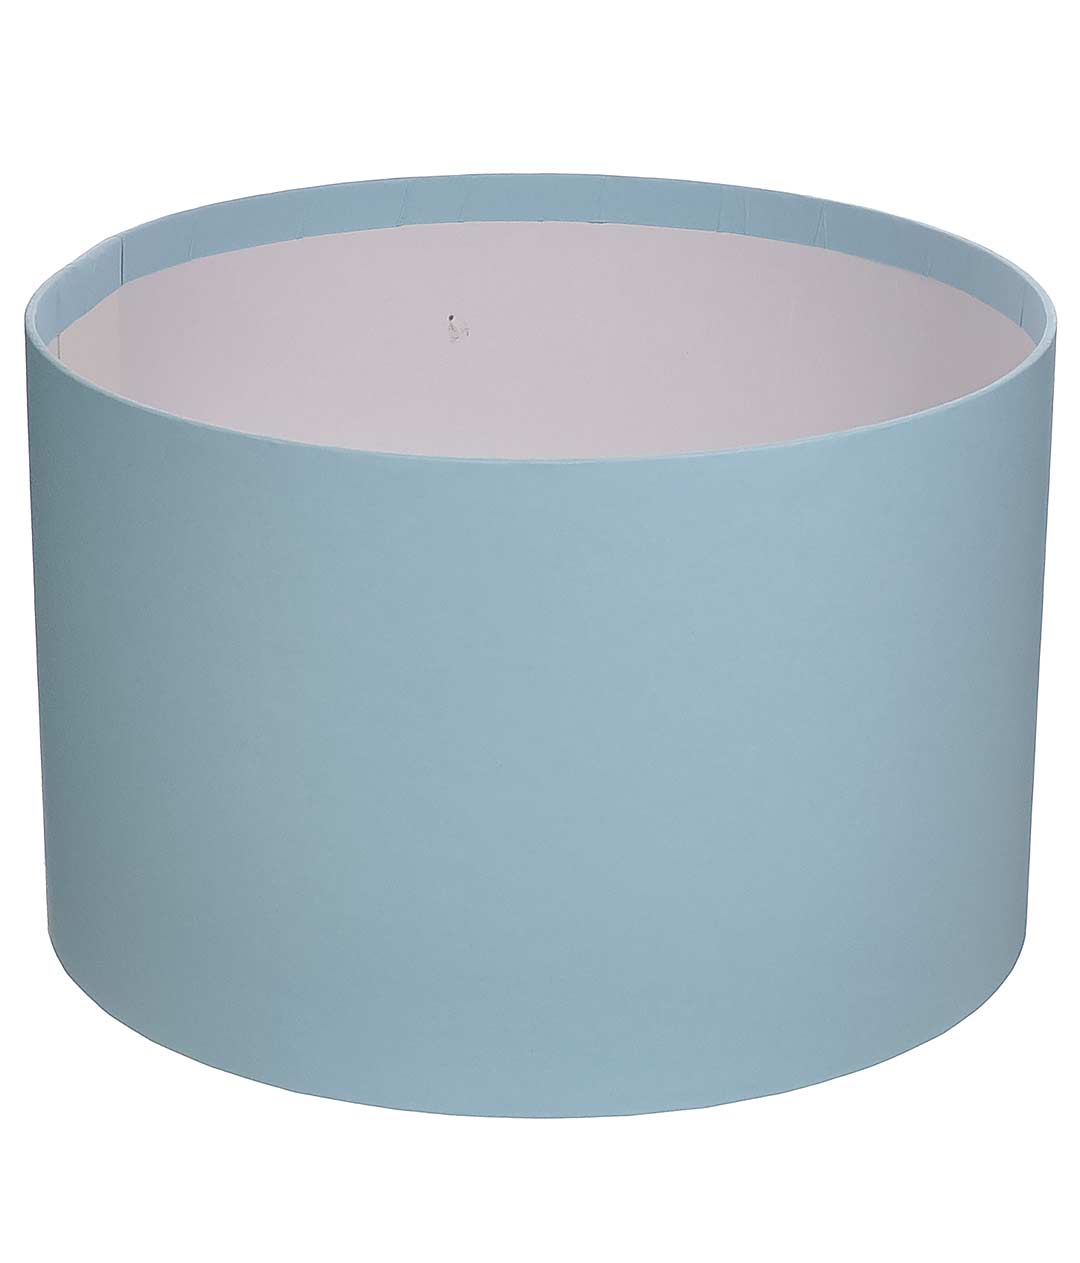 Изображение Коробка круглая для цветов голубая из бумаги 200/130 без крышки